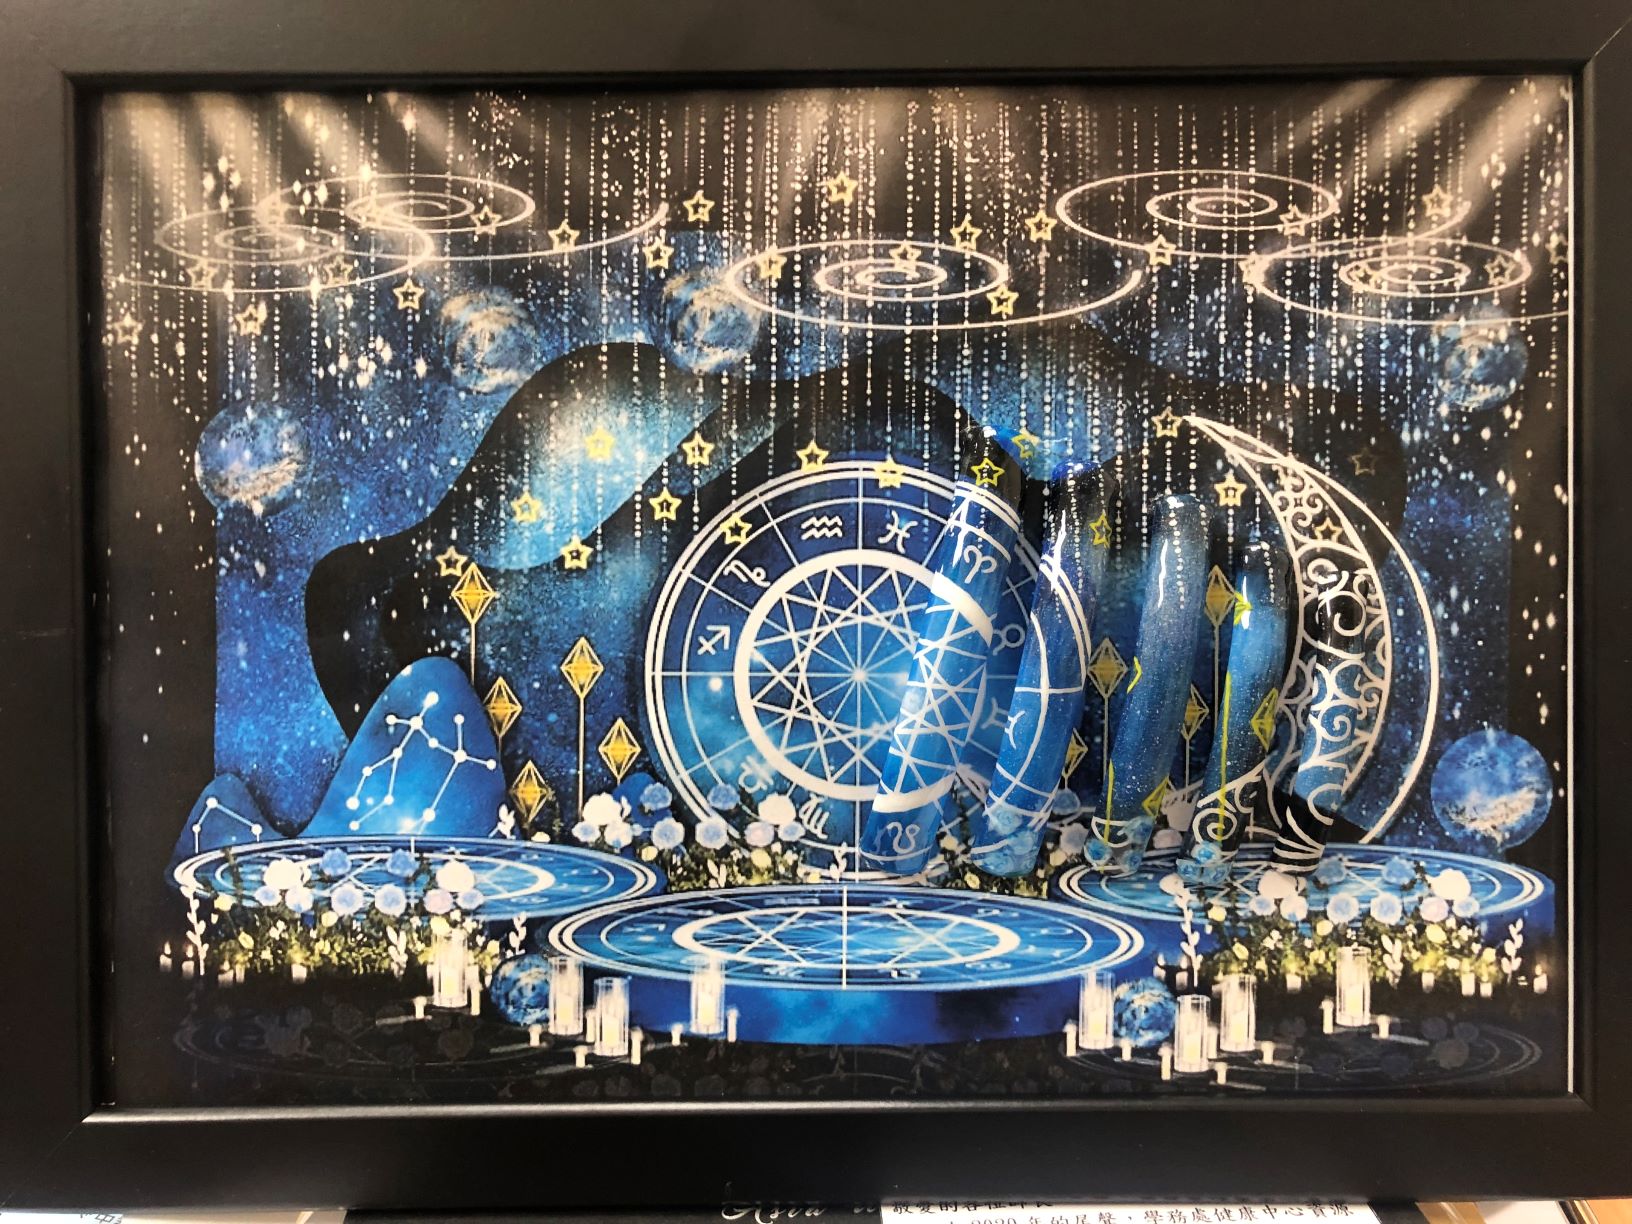 榮獲凝膠美甲彩繪組競賽亞軍的廖涓合同學「星月捕夢」作品。